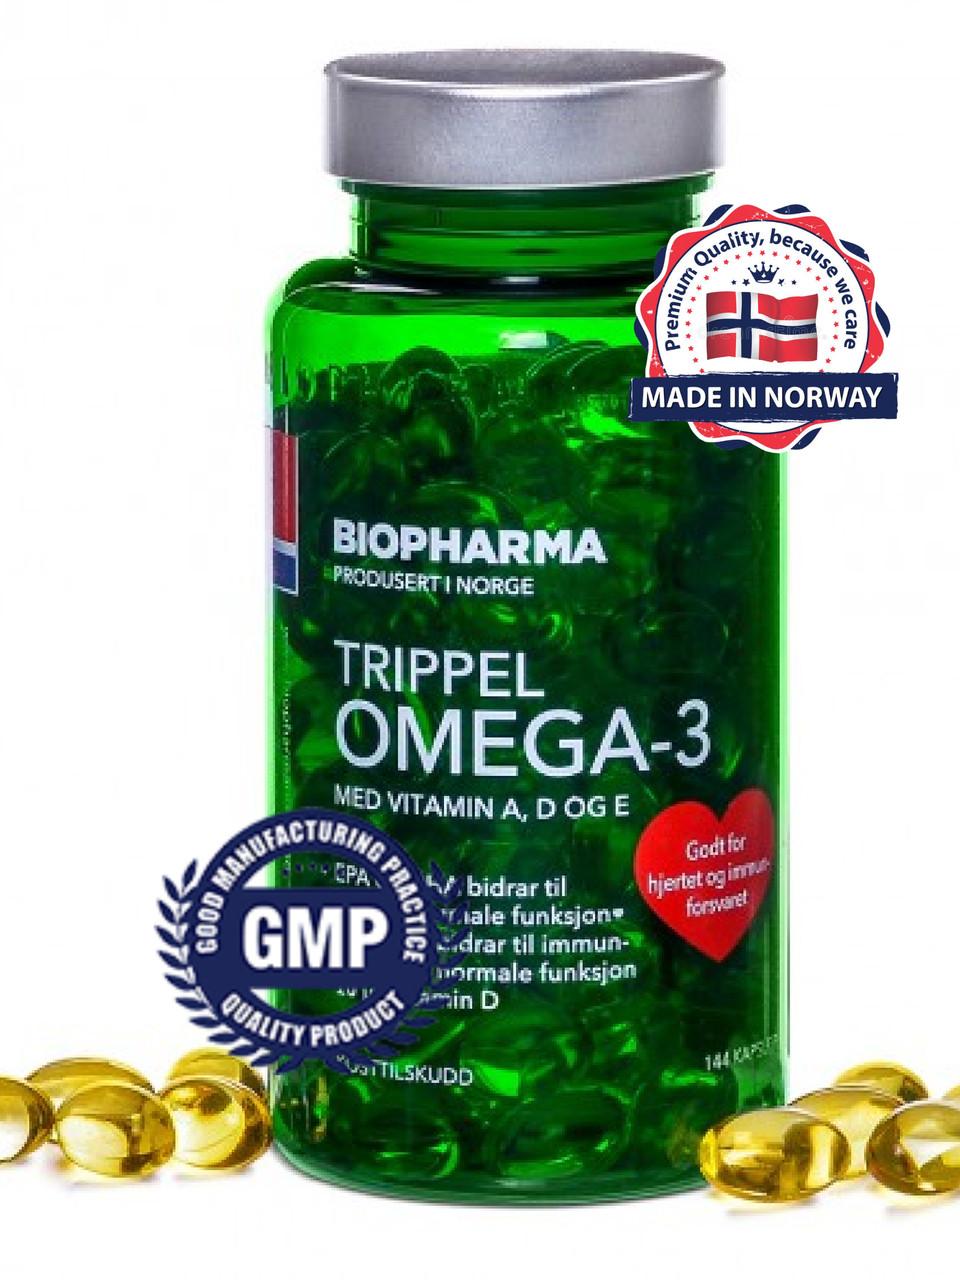 Omega 3 vitamin